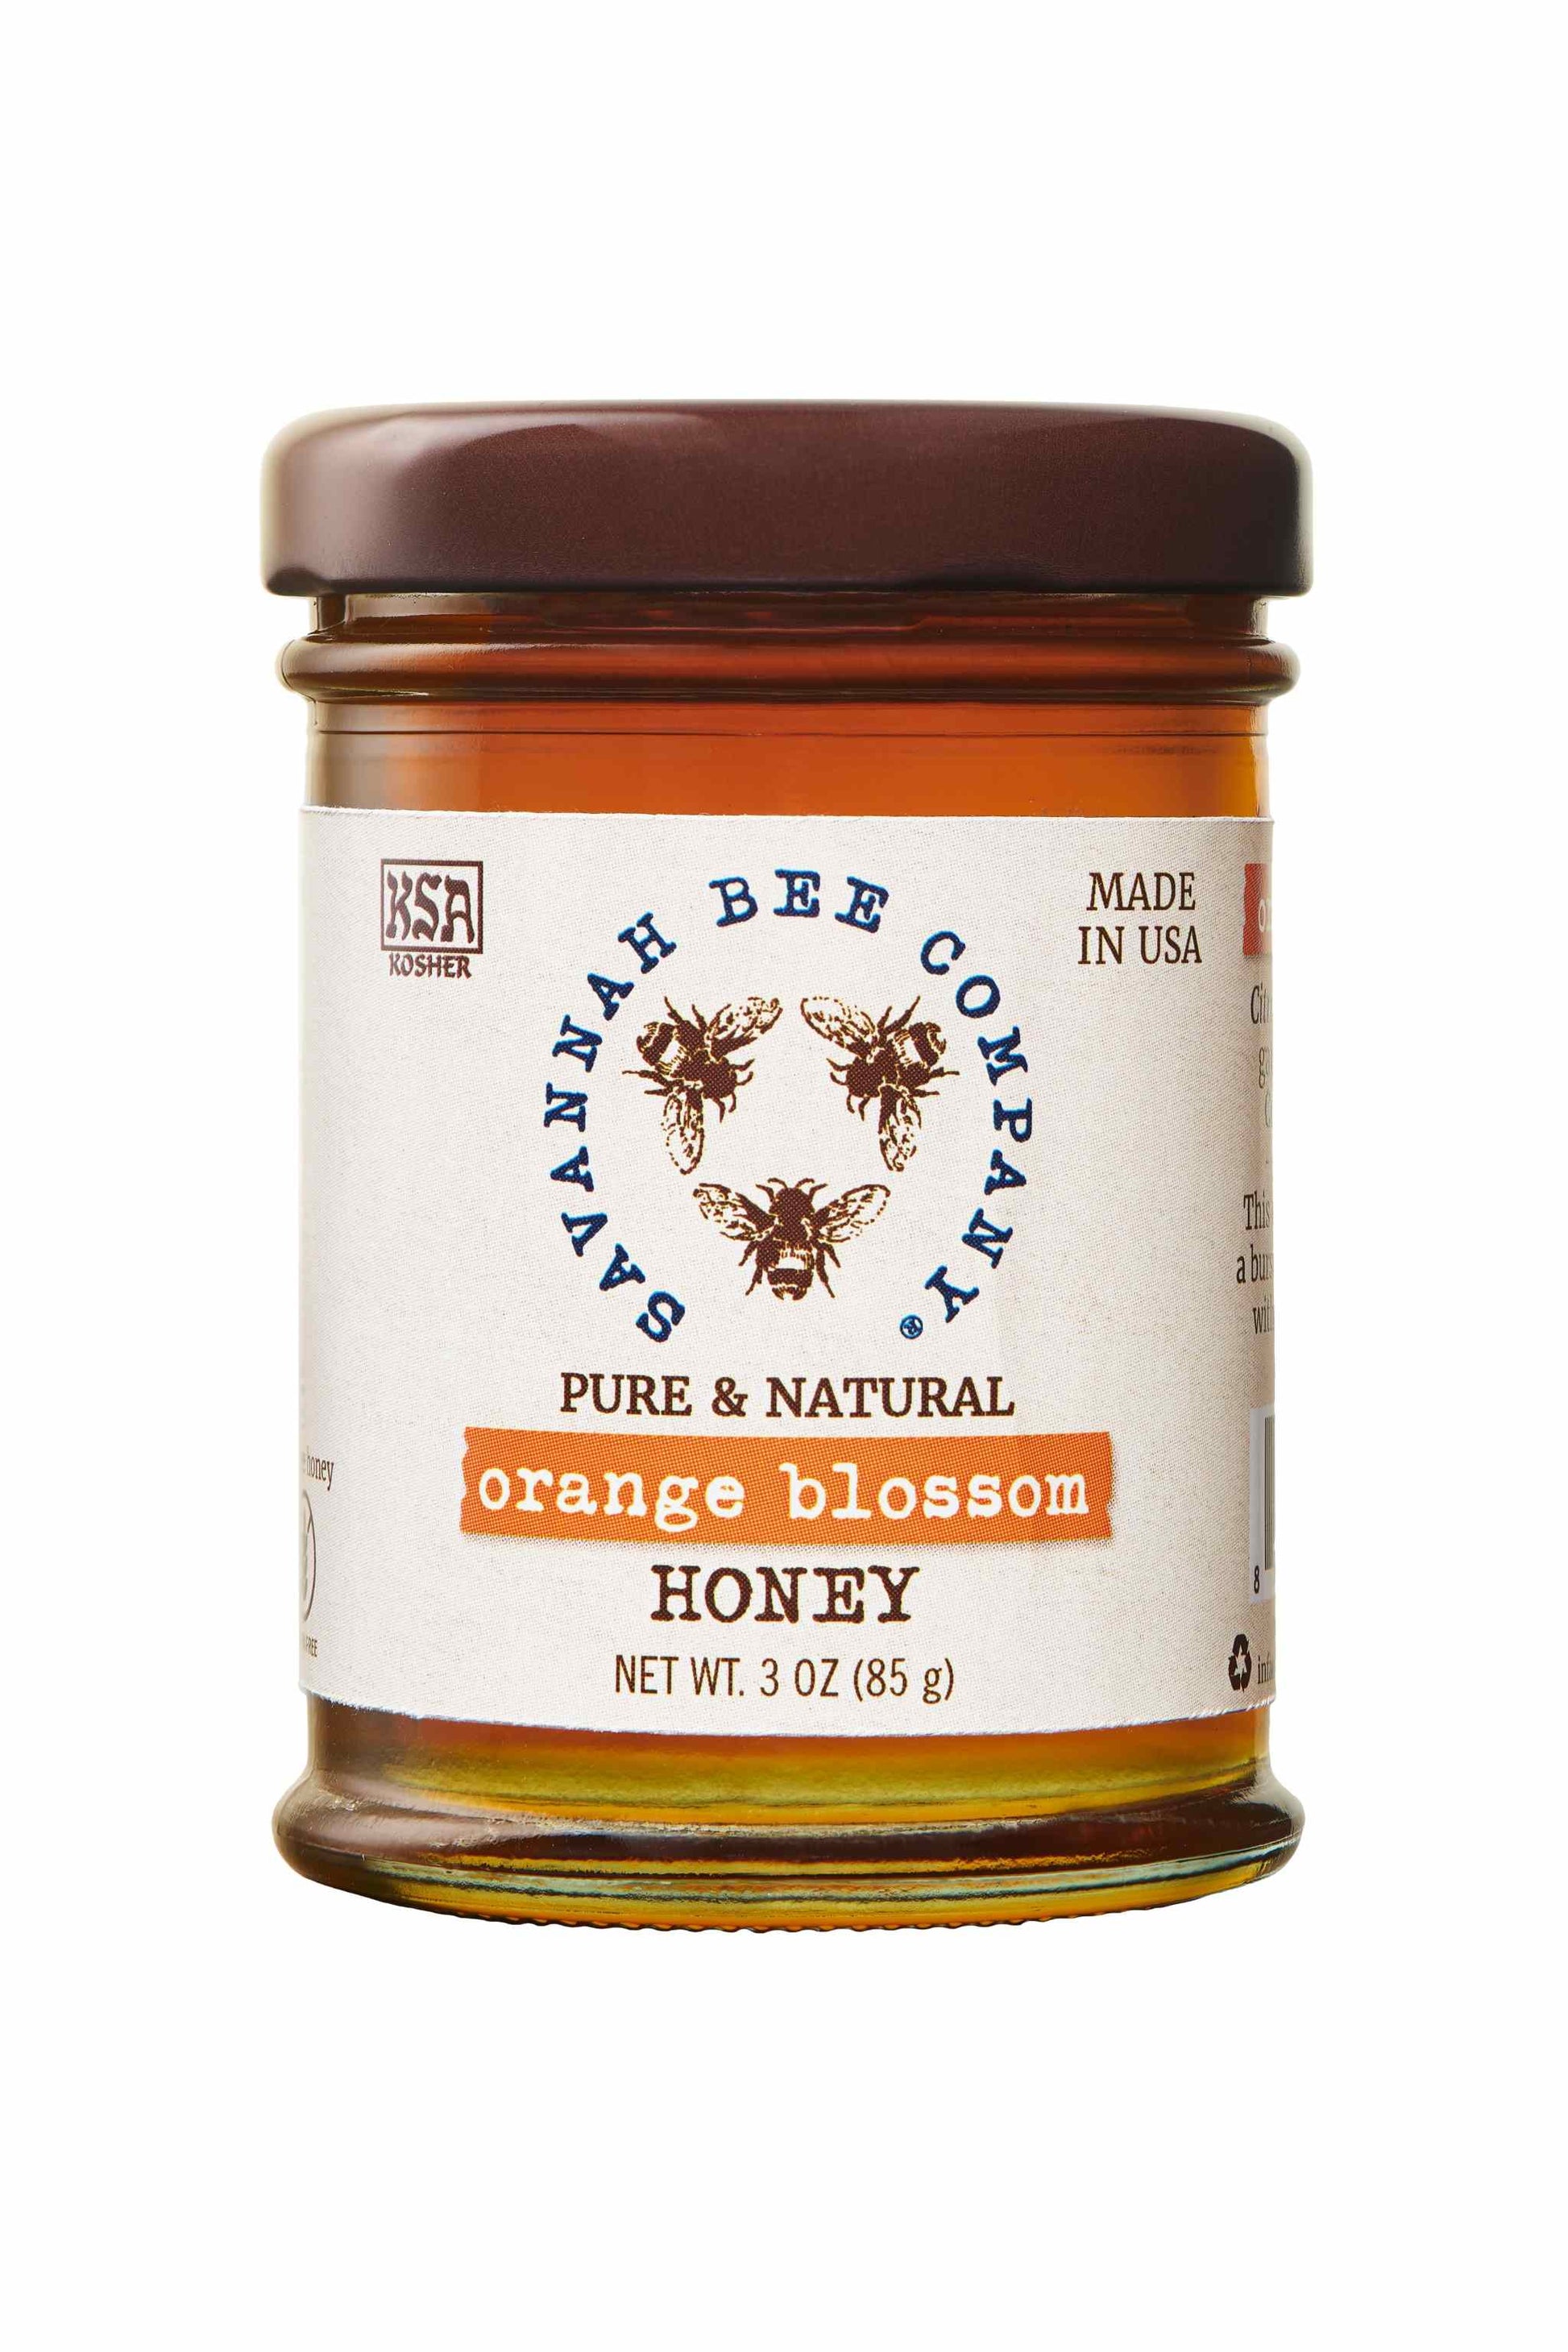 Pure & Natural Orange Blossom Honey 3 oz. mini studio shot.